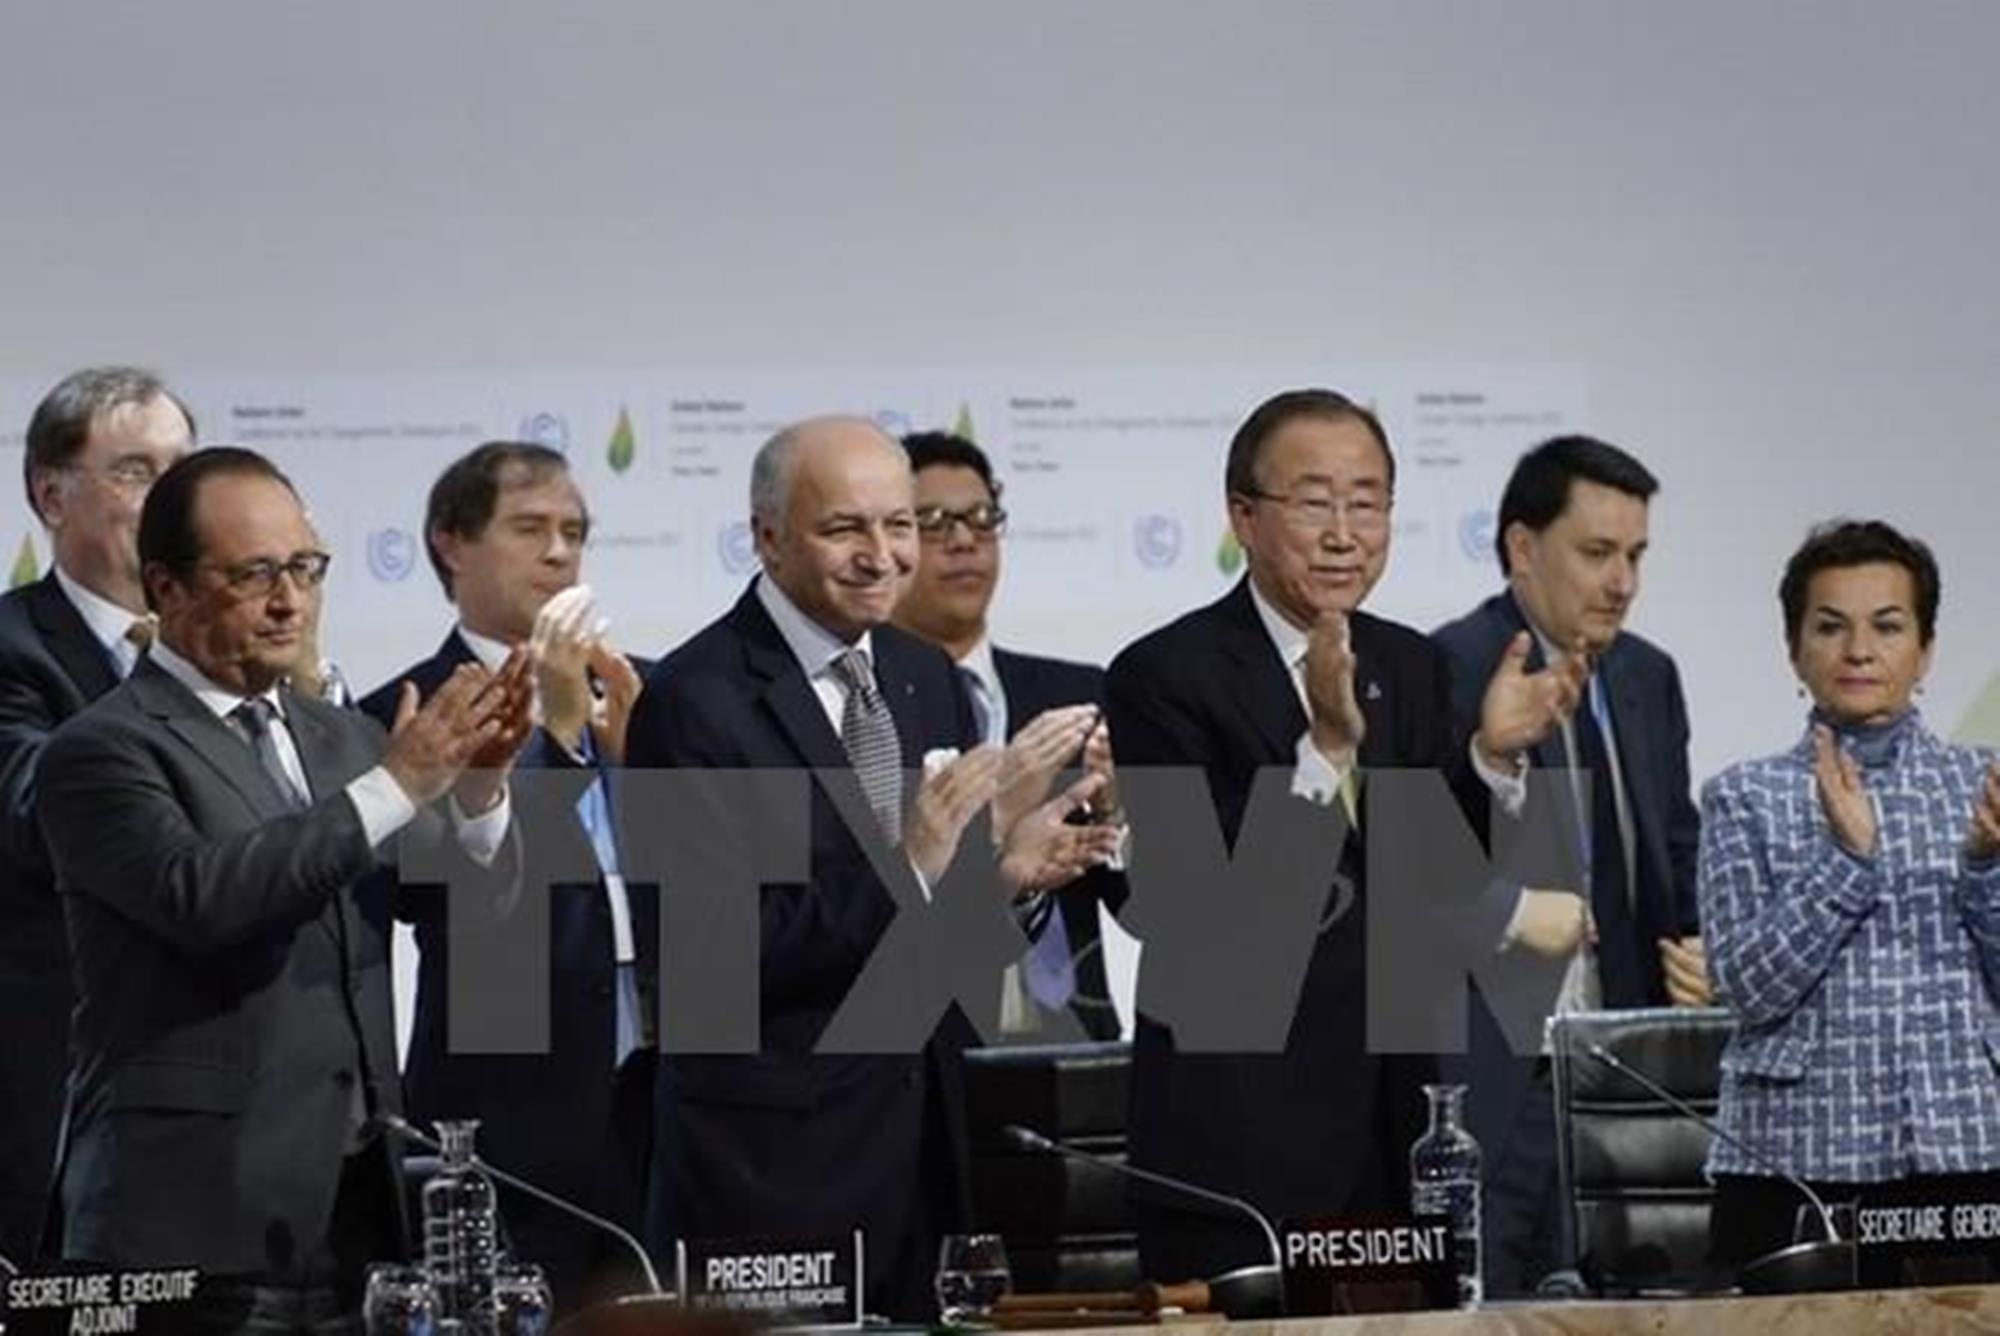 出席第21届联合国气候变化大会的各国代表。图自法新社/越通社